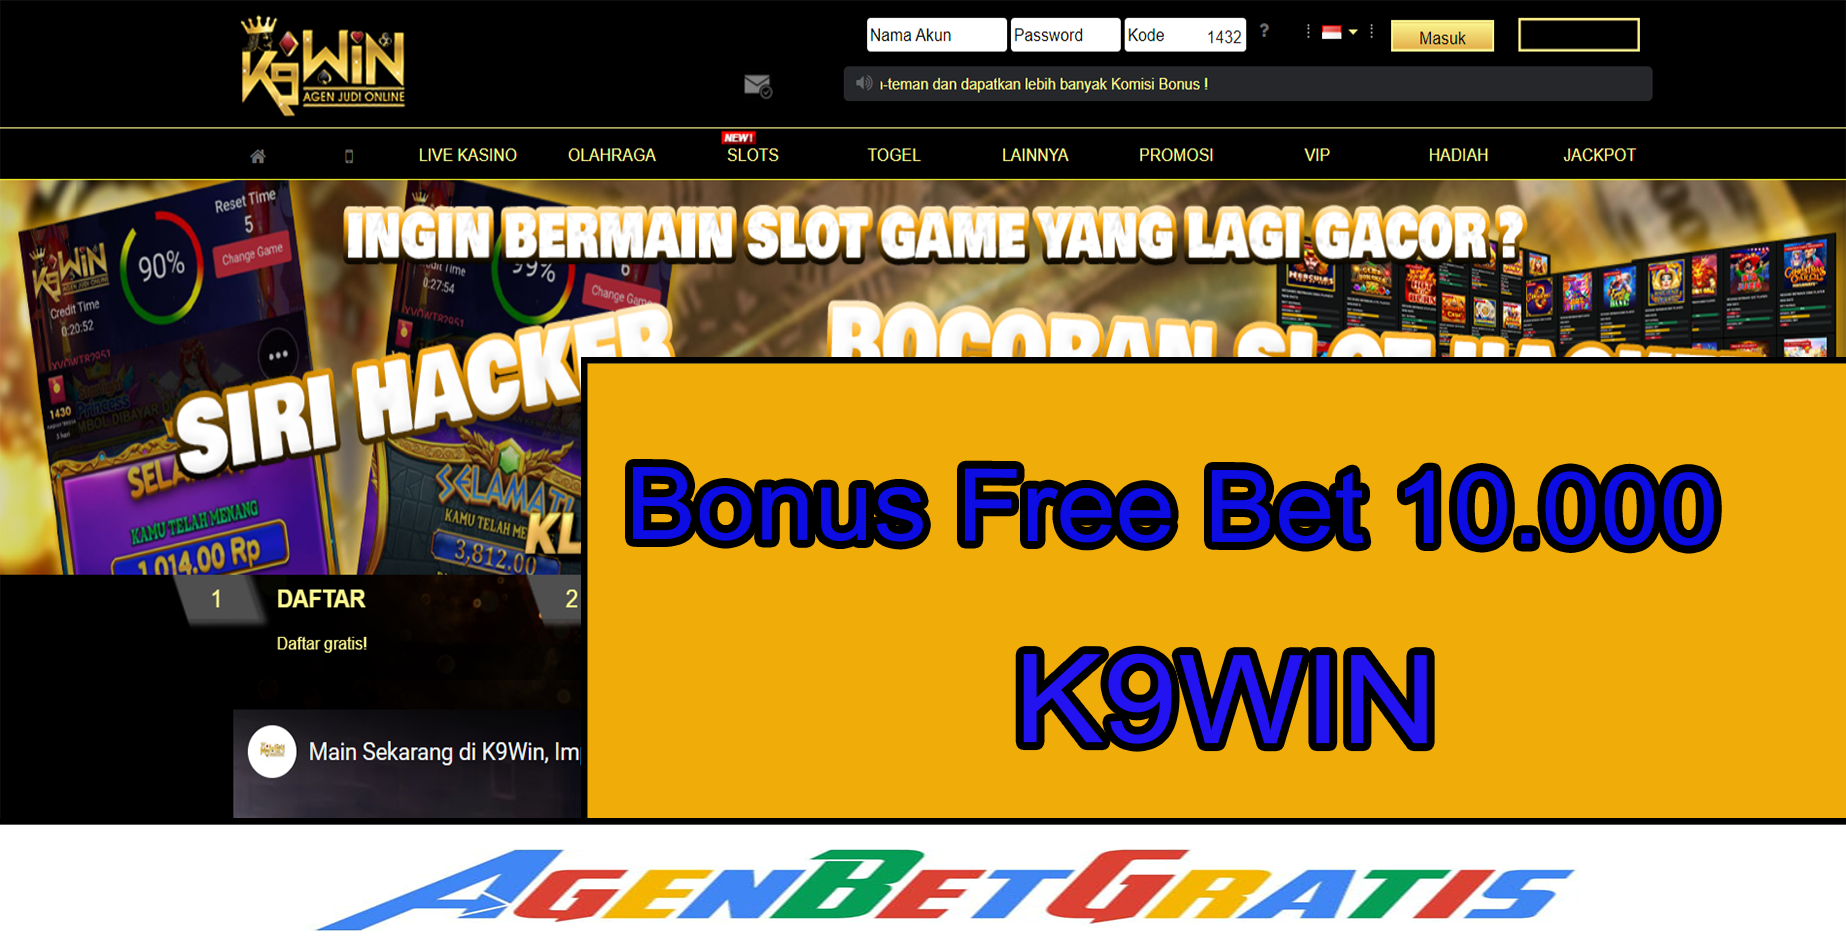 K9WIN - Bonus FreeBet 10.000